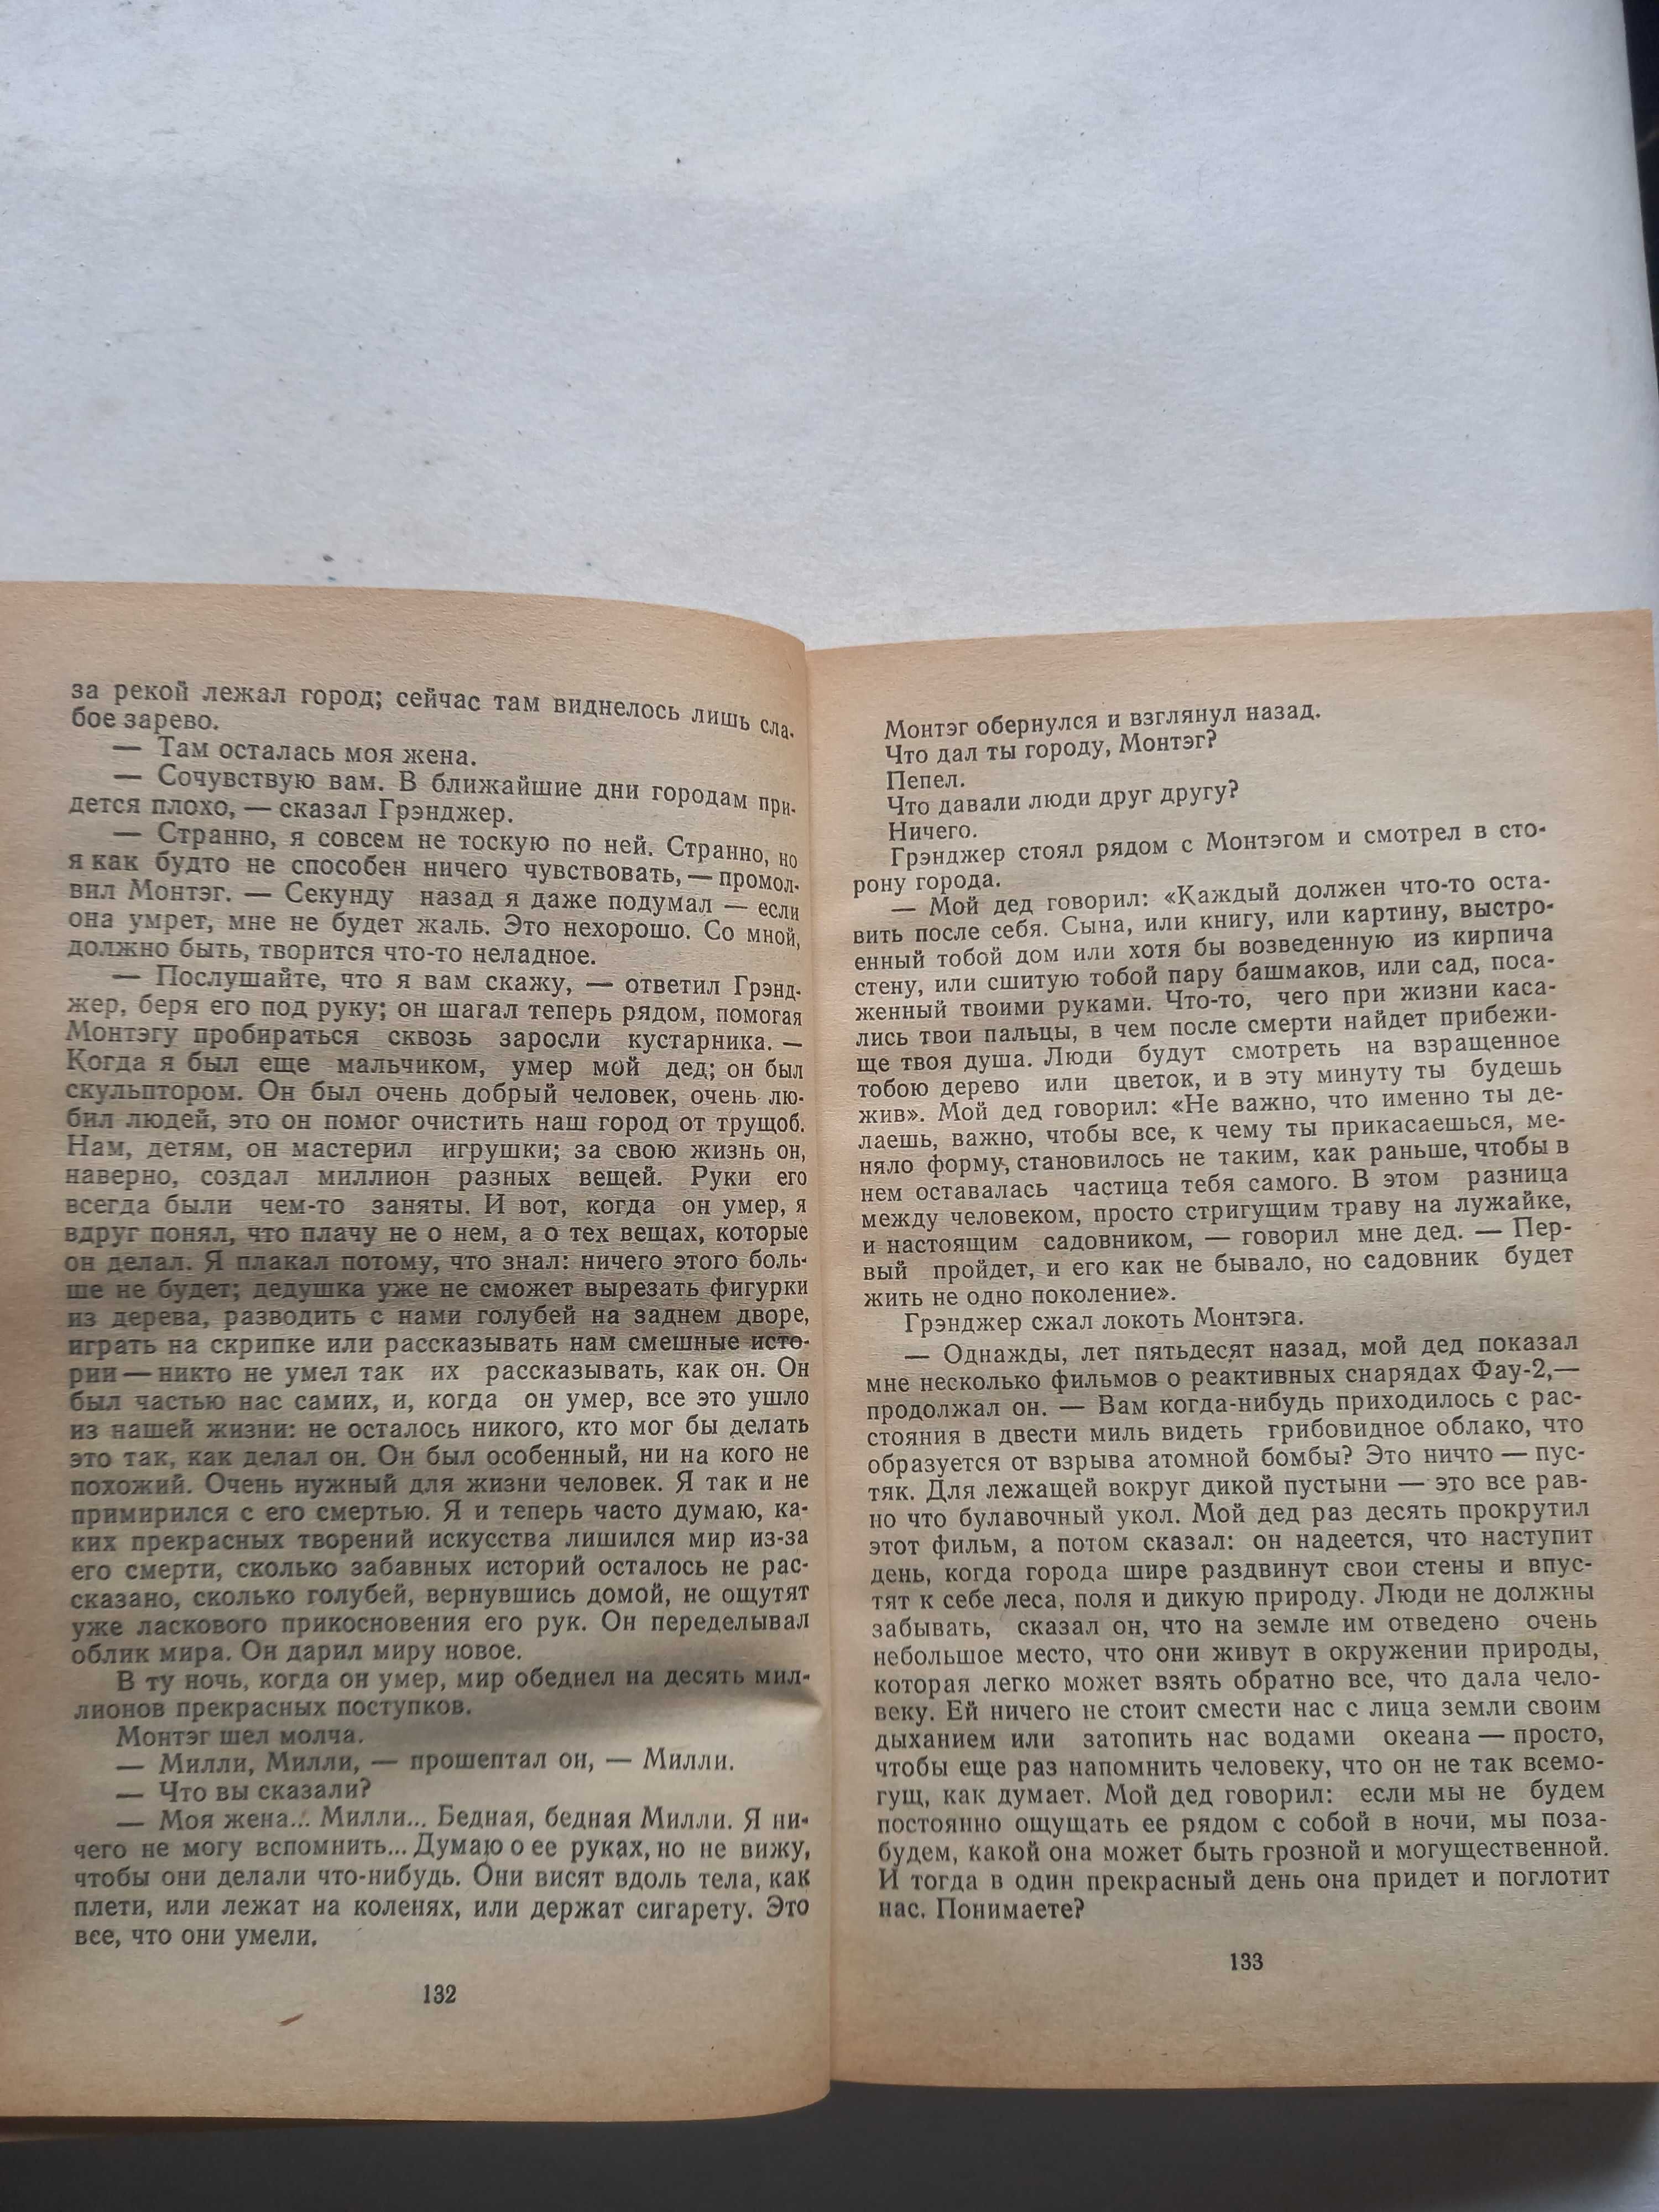 Книга Рея Бредбері "Американська фантастика, том 1" 451 по Фарингейту